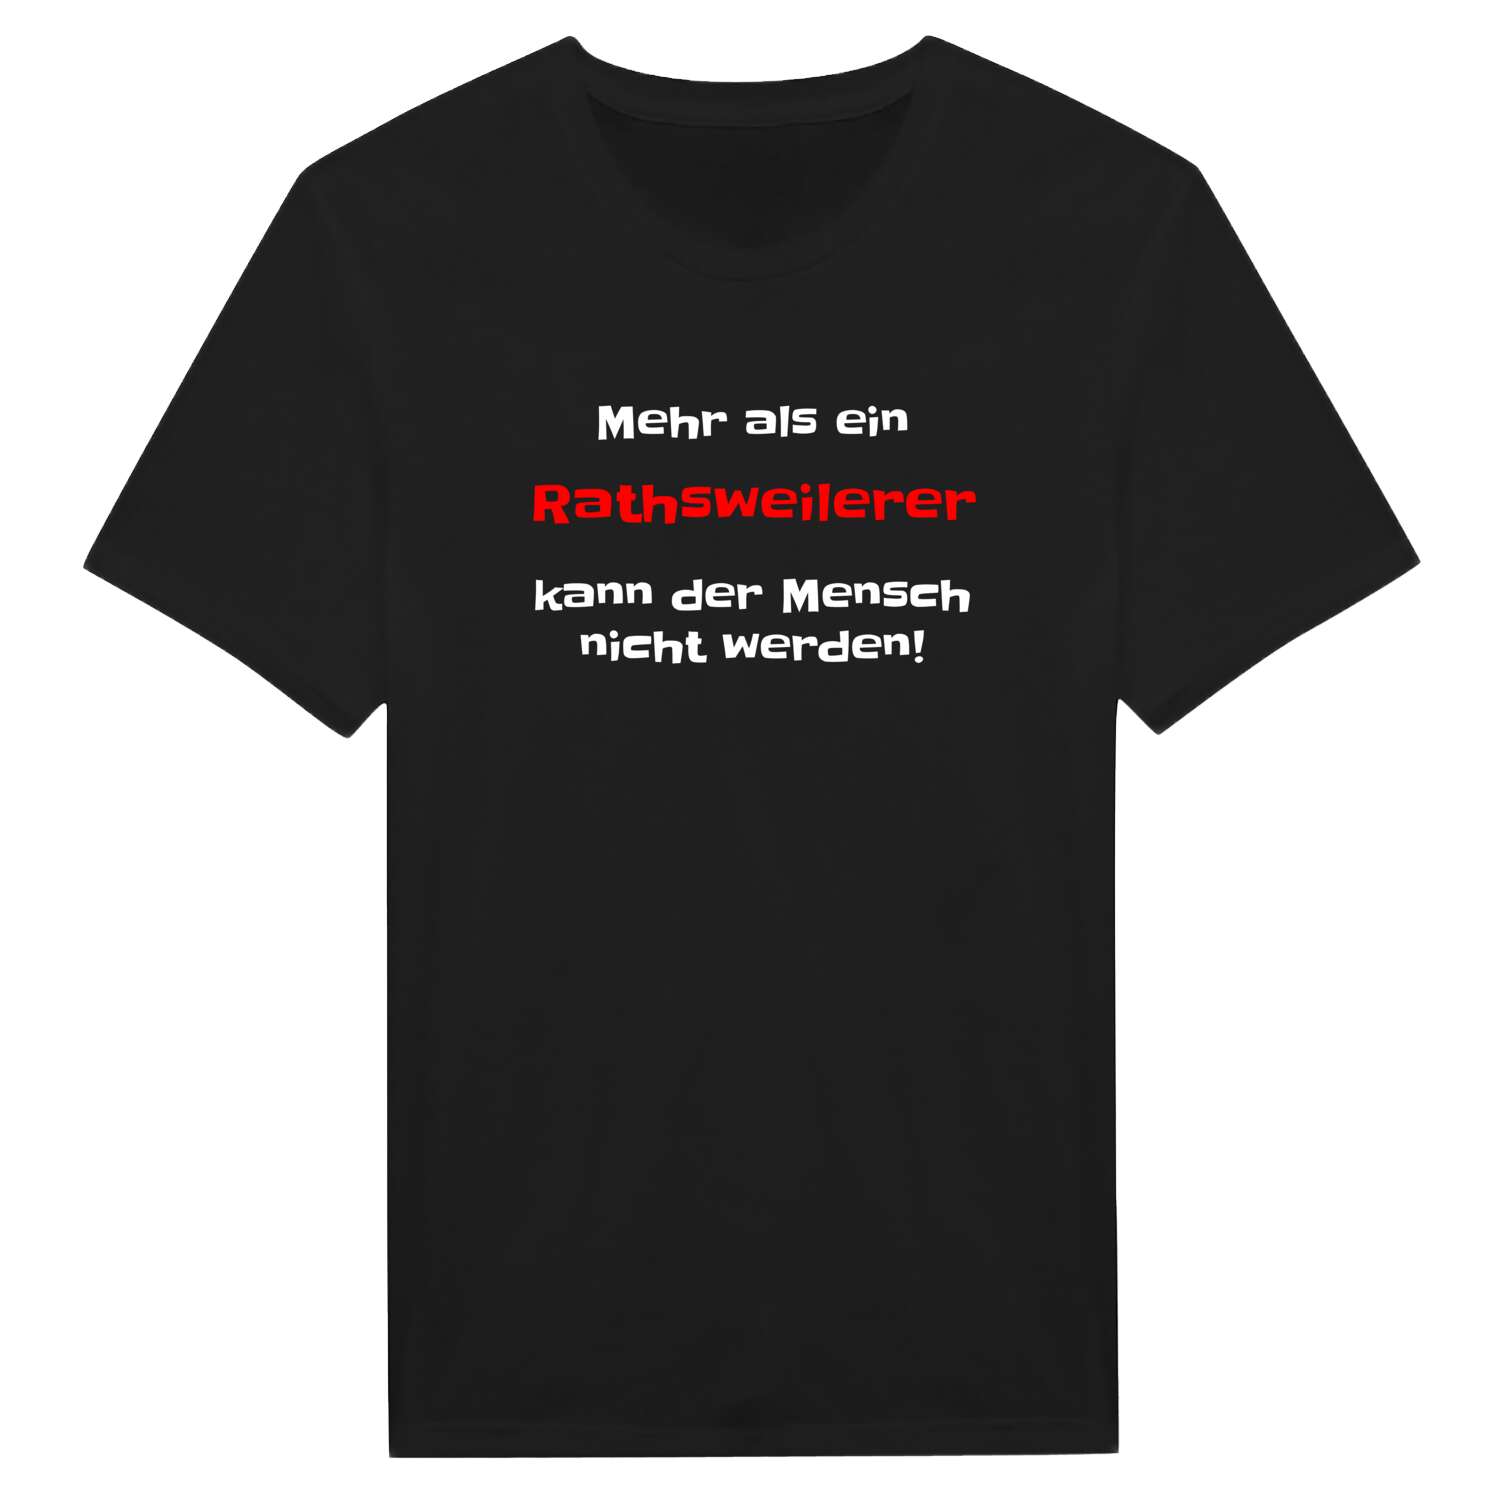 Rathsweiler T-Shirt »Mehr als ein«